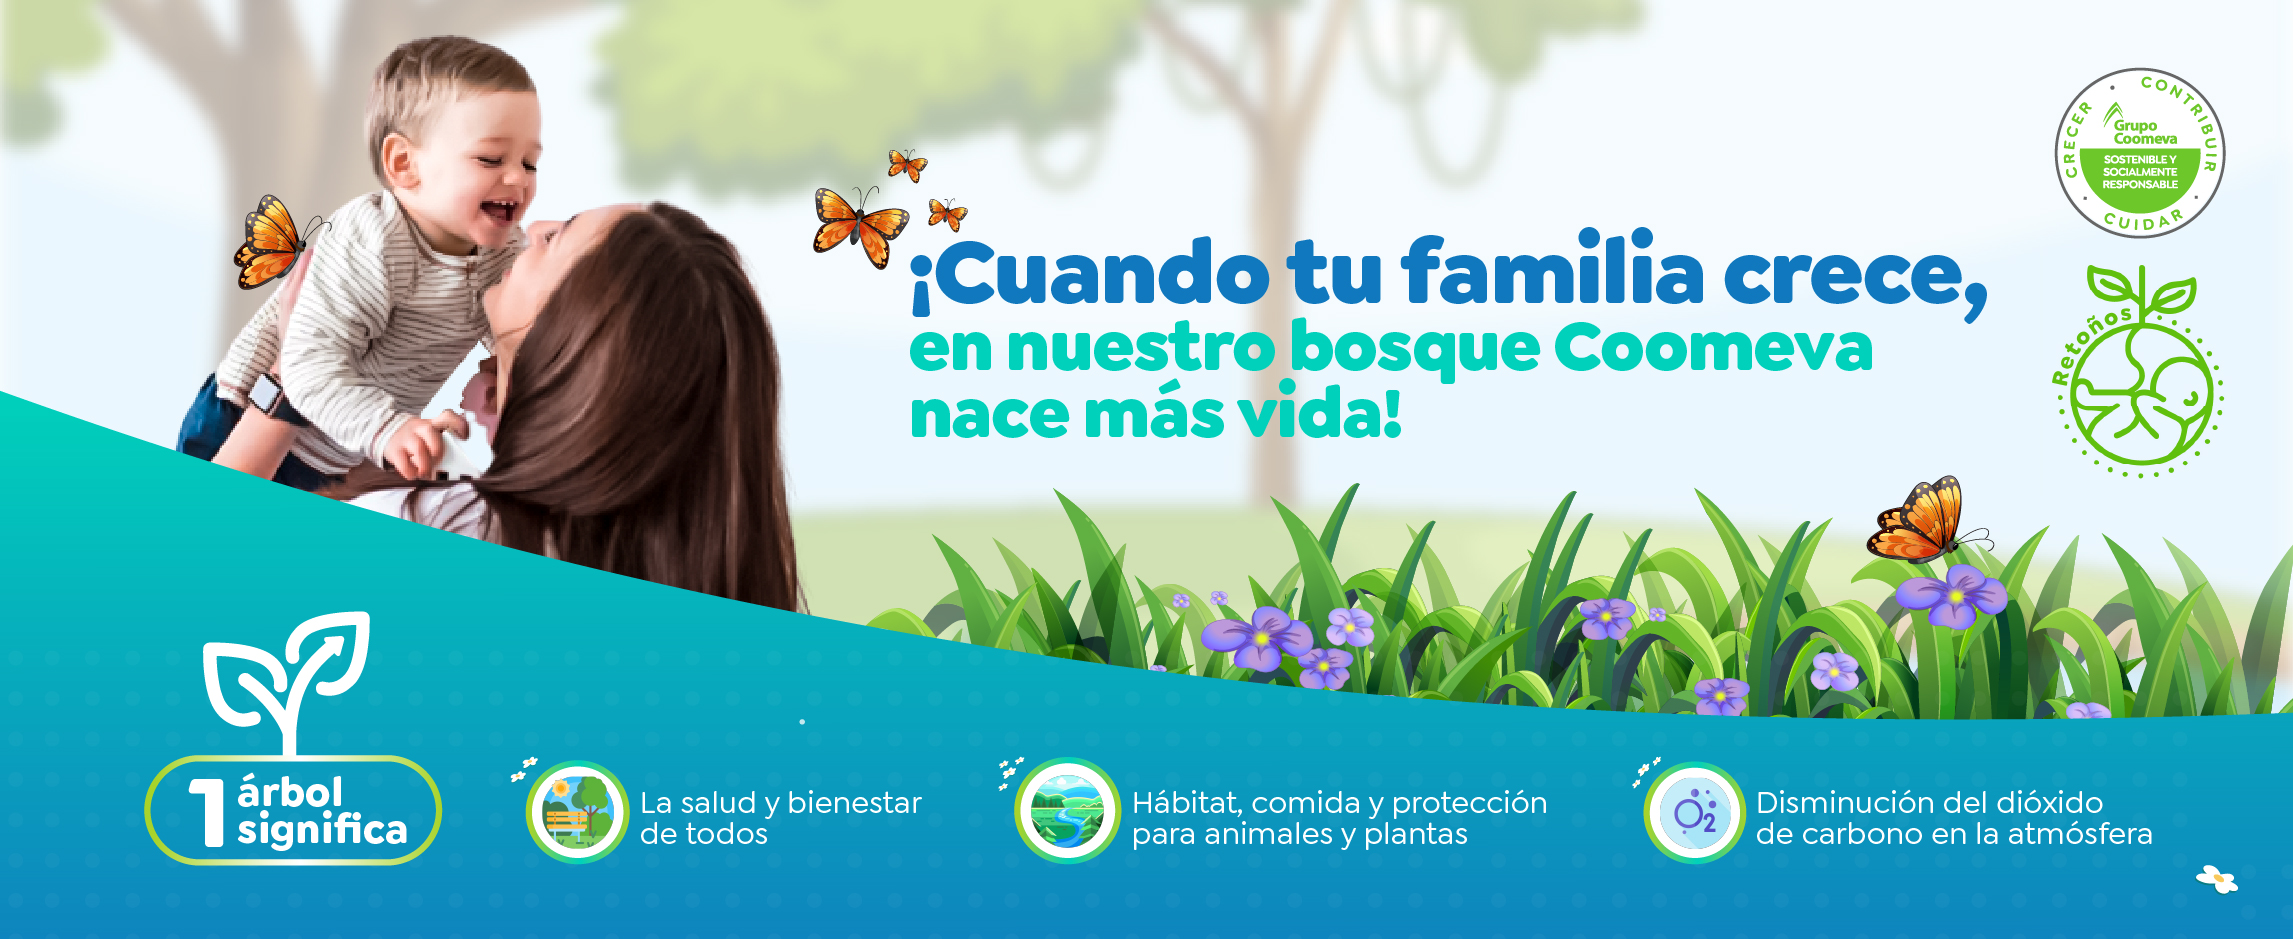 ¡Cuando tu familia crece, en nuestro bosque Coomeva nace mas vida!